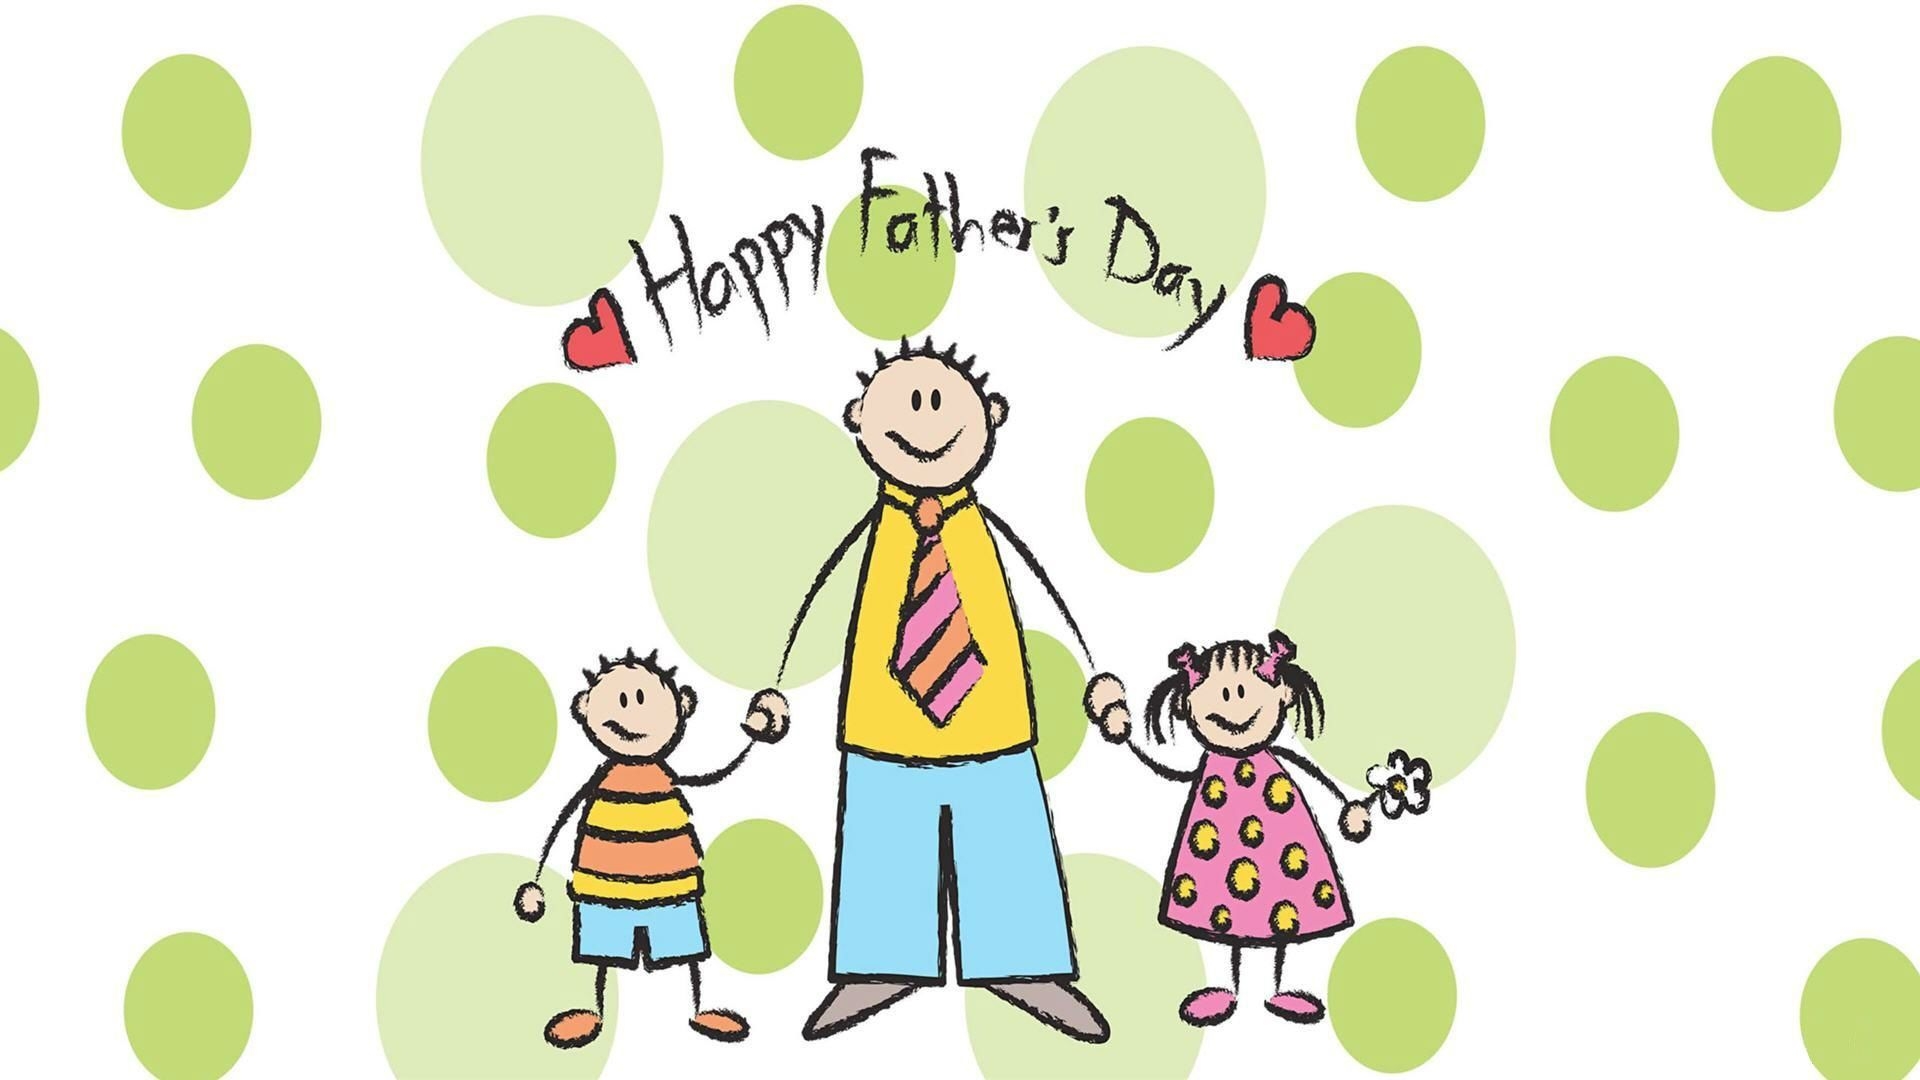 Про папу на английском. С днем отца. Happy fathers Day открытка. Фон для поздравления с днем отца. С днём папы в Великобритании.